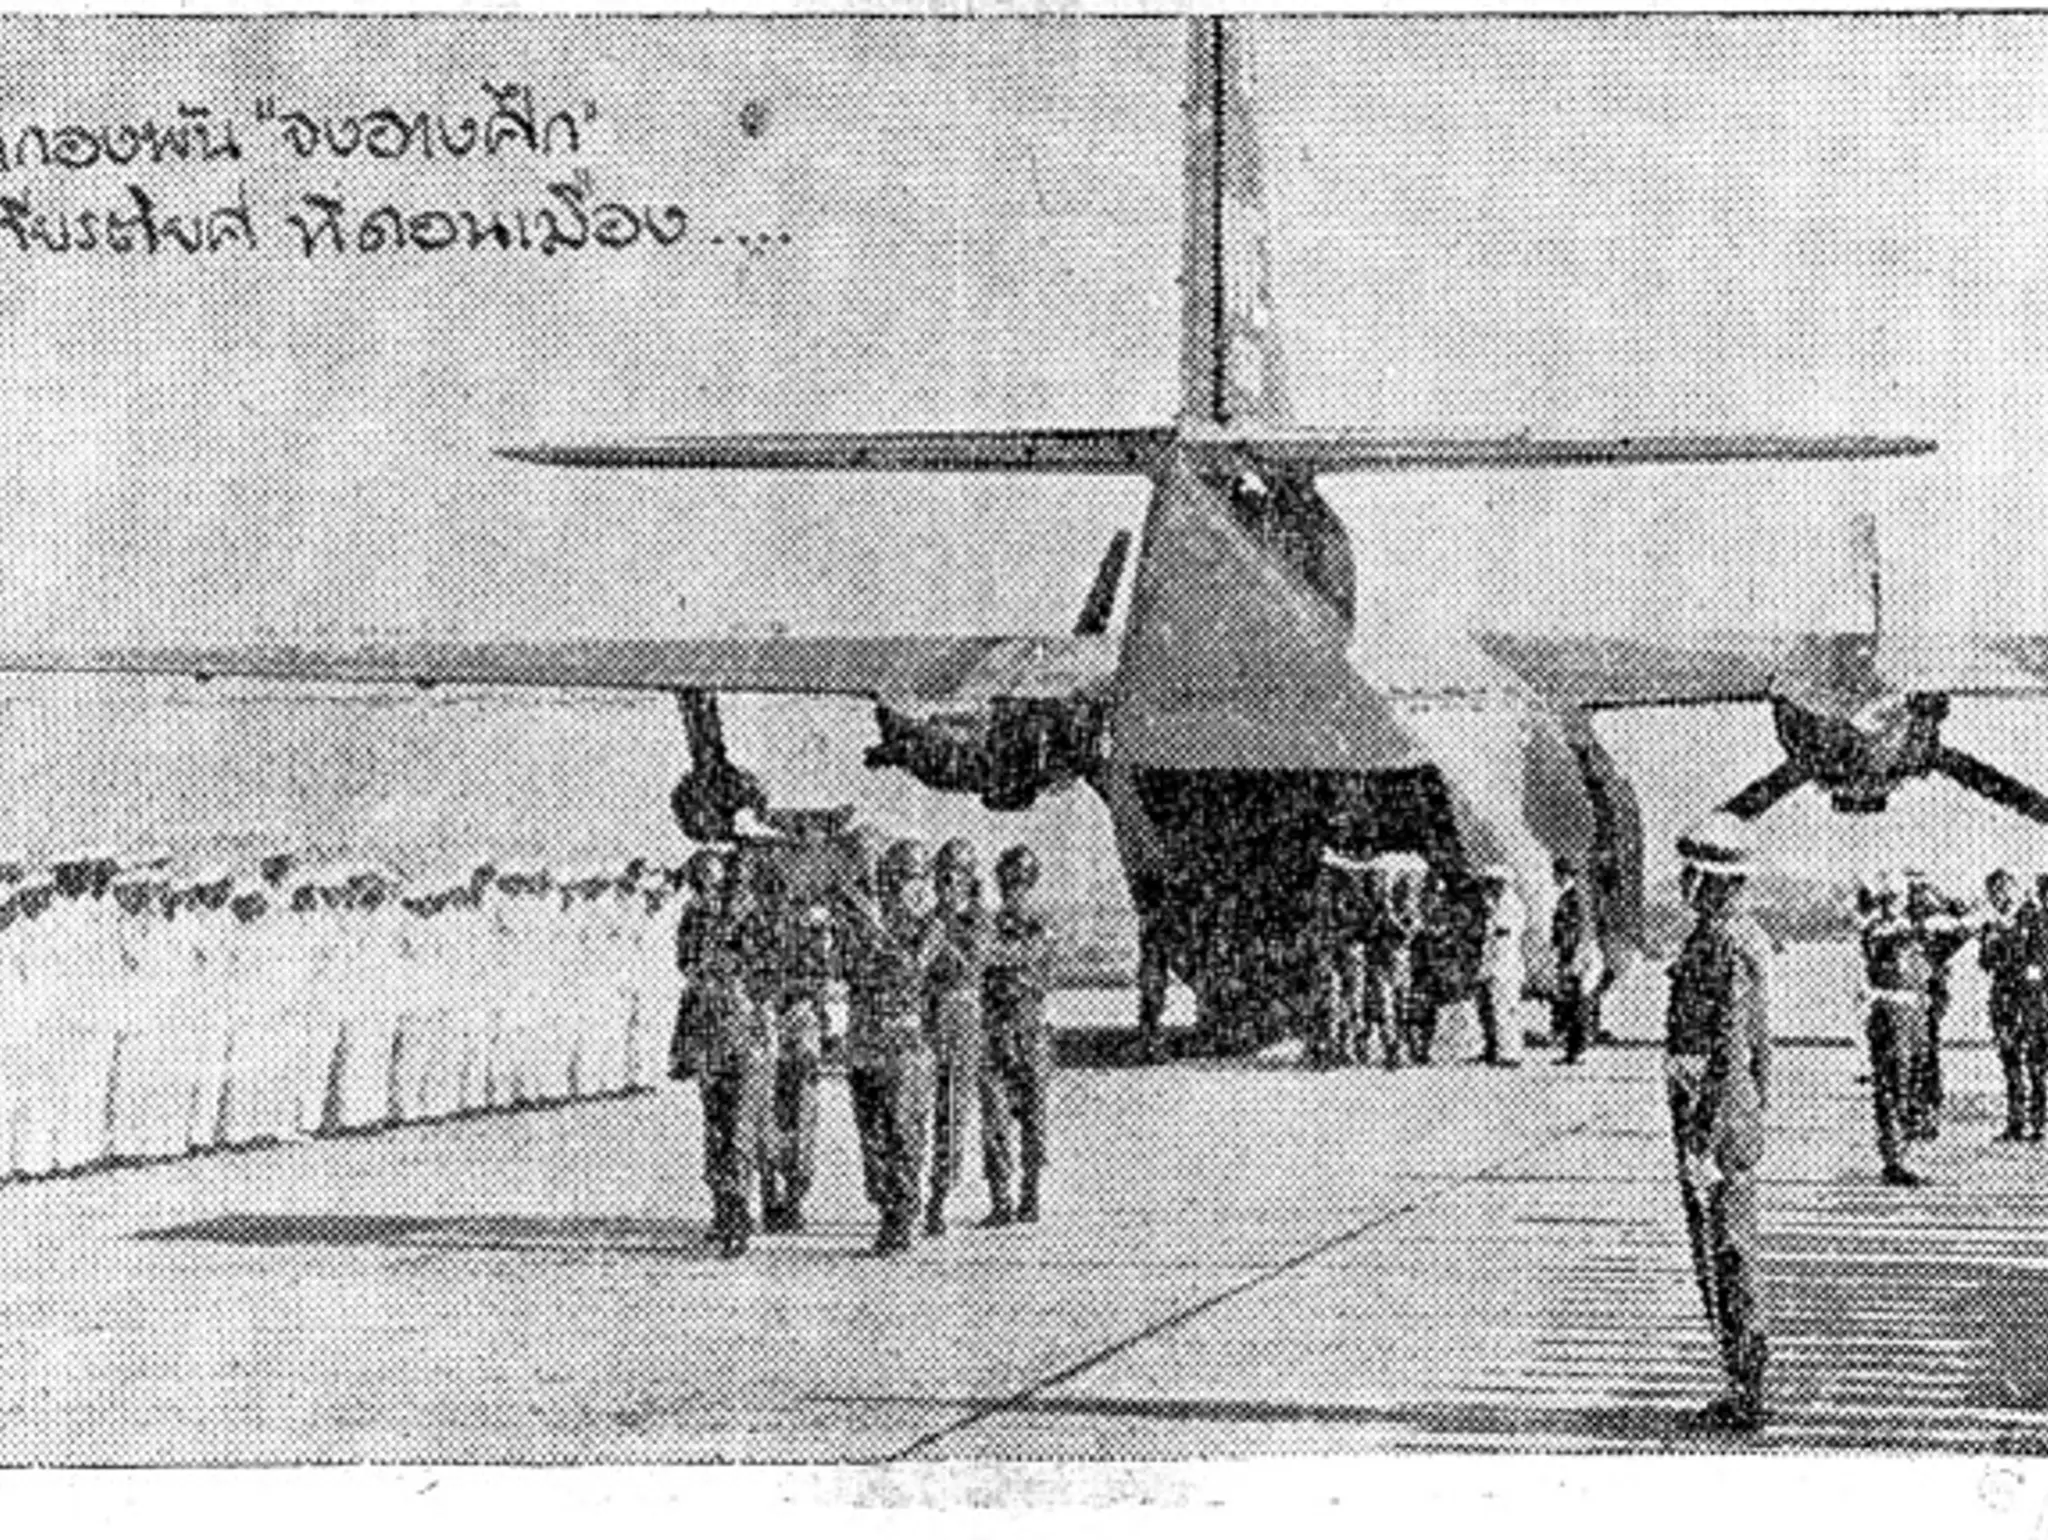 412 “อาวุธใหม่” ที่กองทัพไทยได้รับจากสหรัฐฯ ในช่วงสงครามเวียดนาม